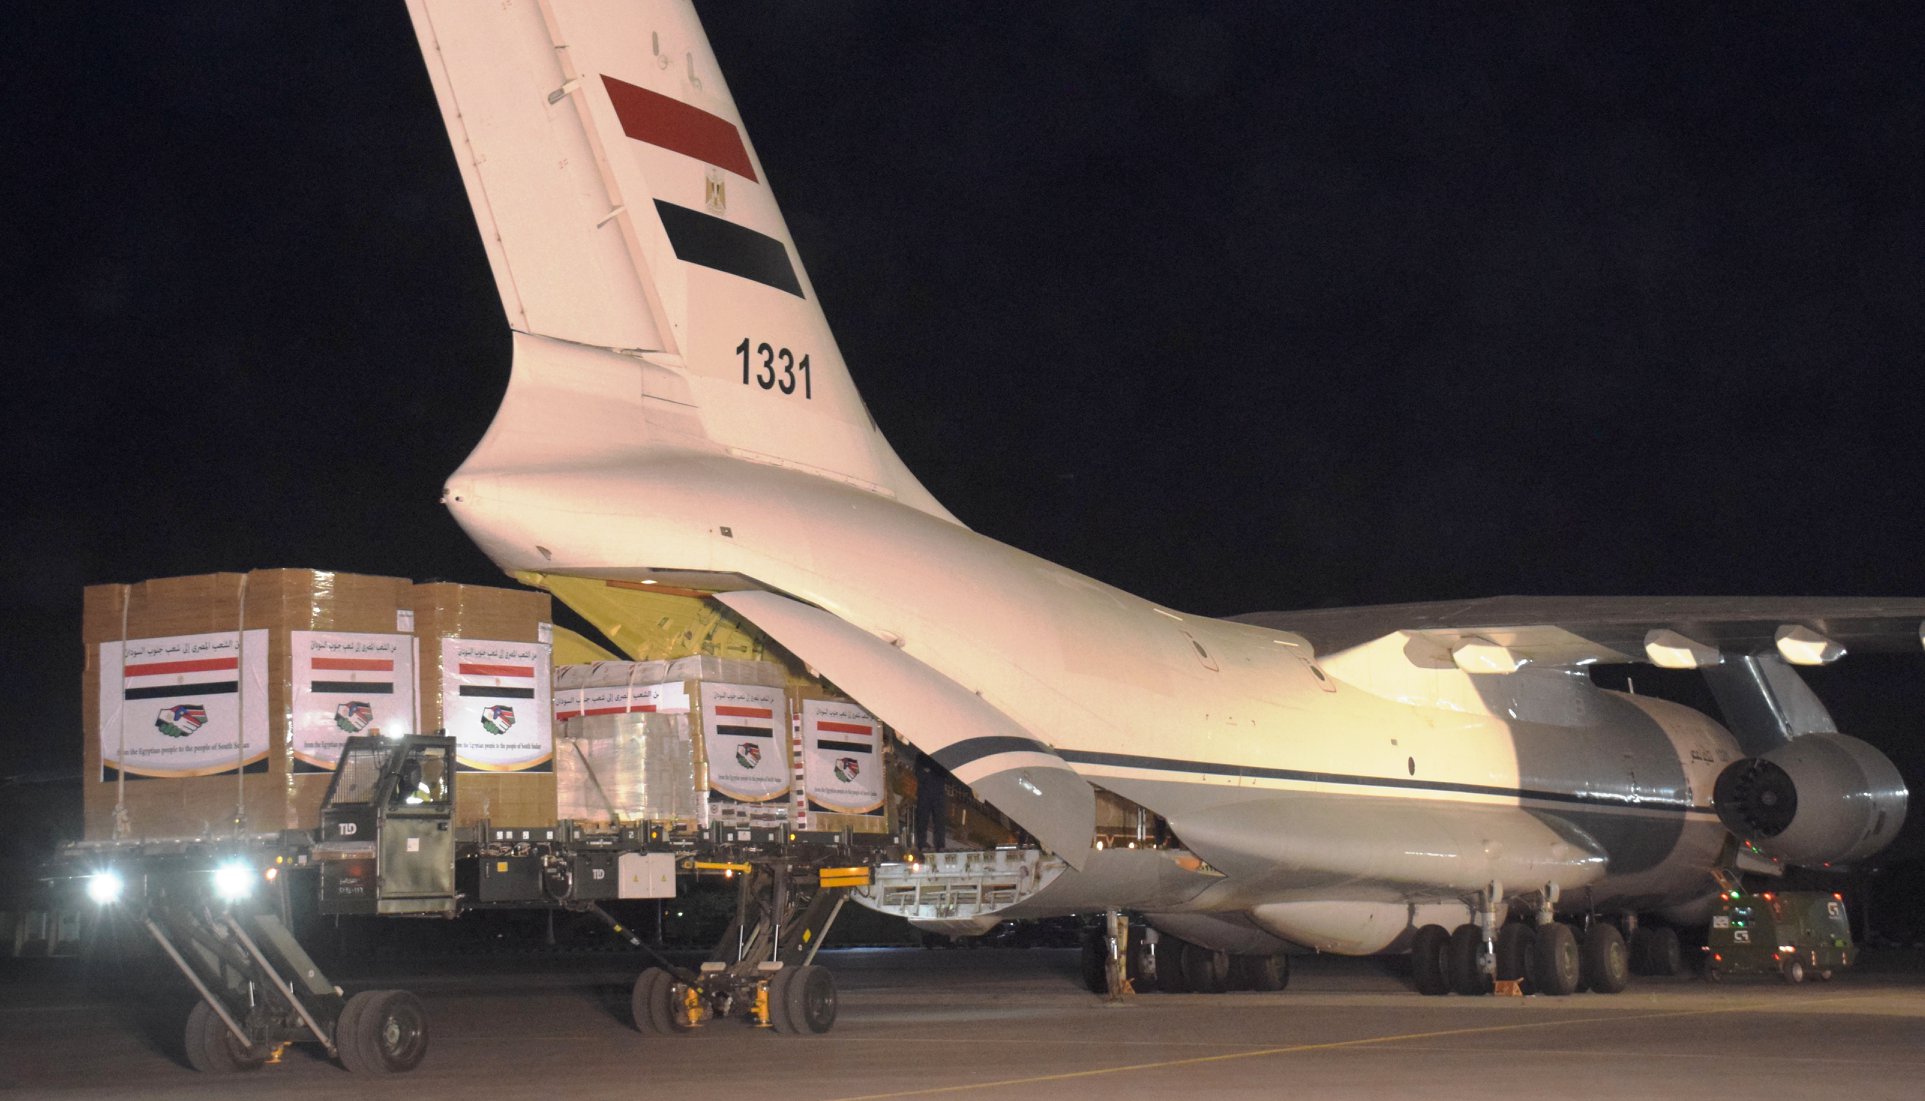   صور و فيديو | مصر ترسل طائرة مساعدات طبية لجمهورية جنوب السودان الشقيقة